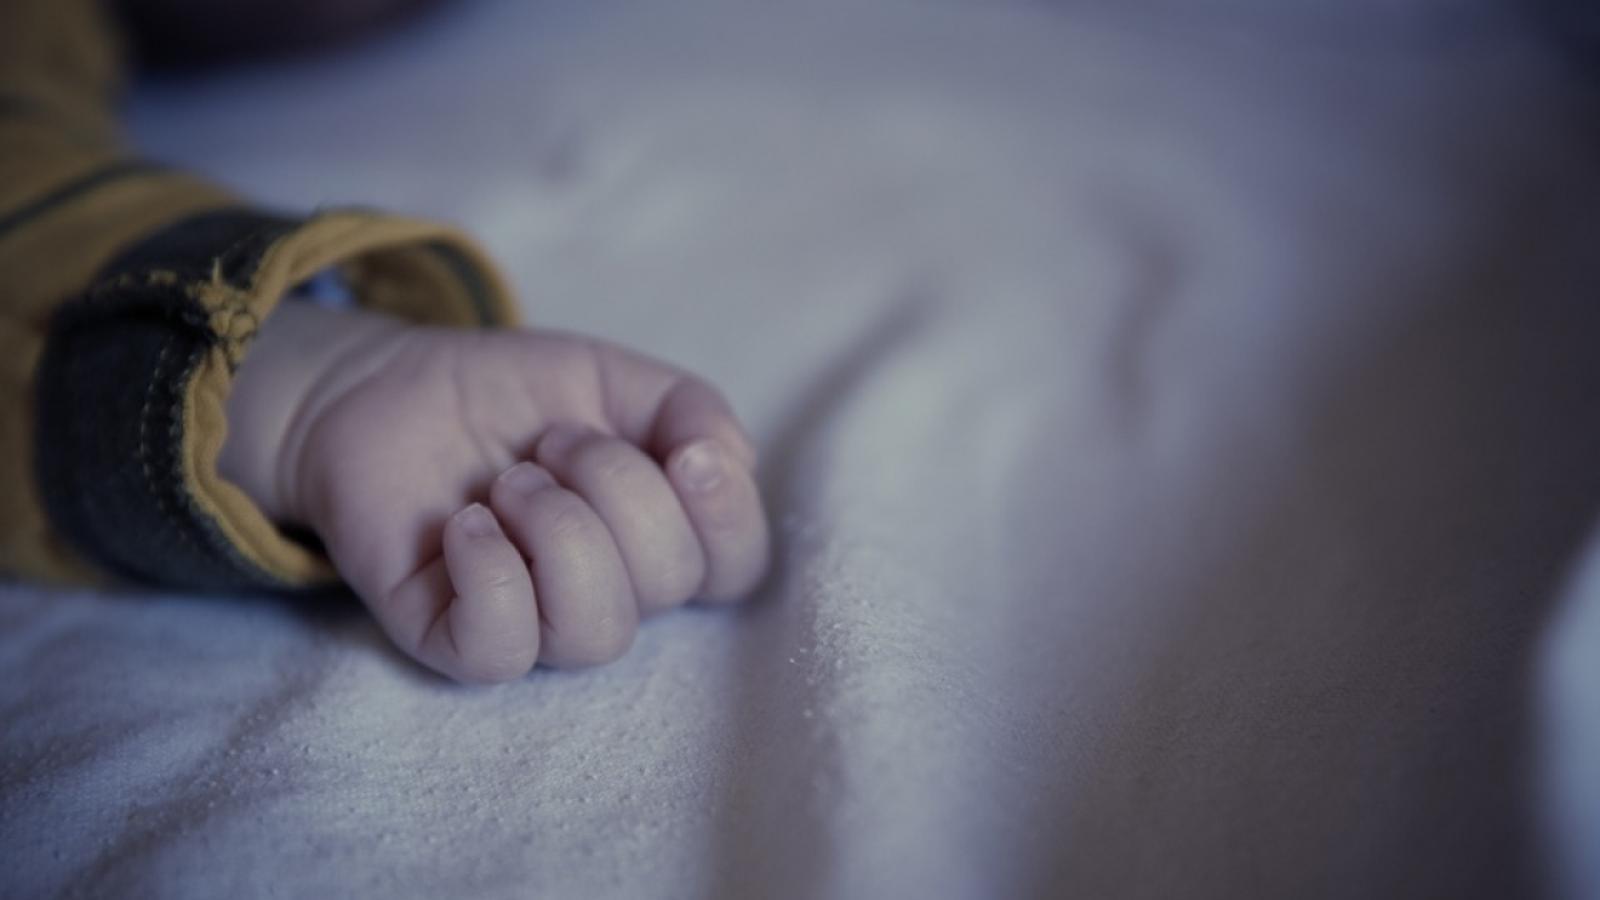  Жительница Кадуйского района во сне случайно задушила своего ребенка